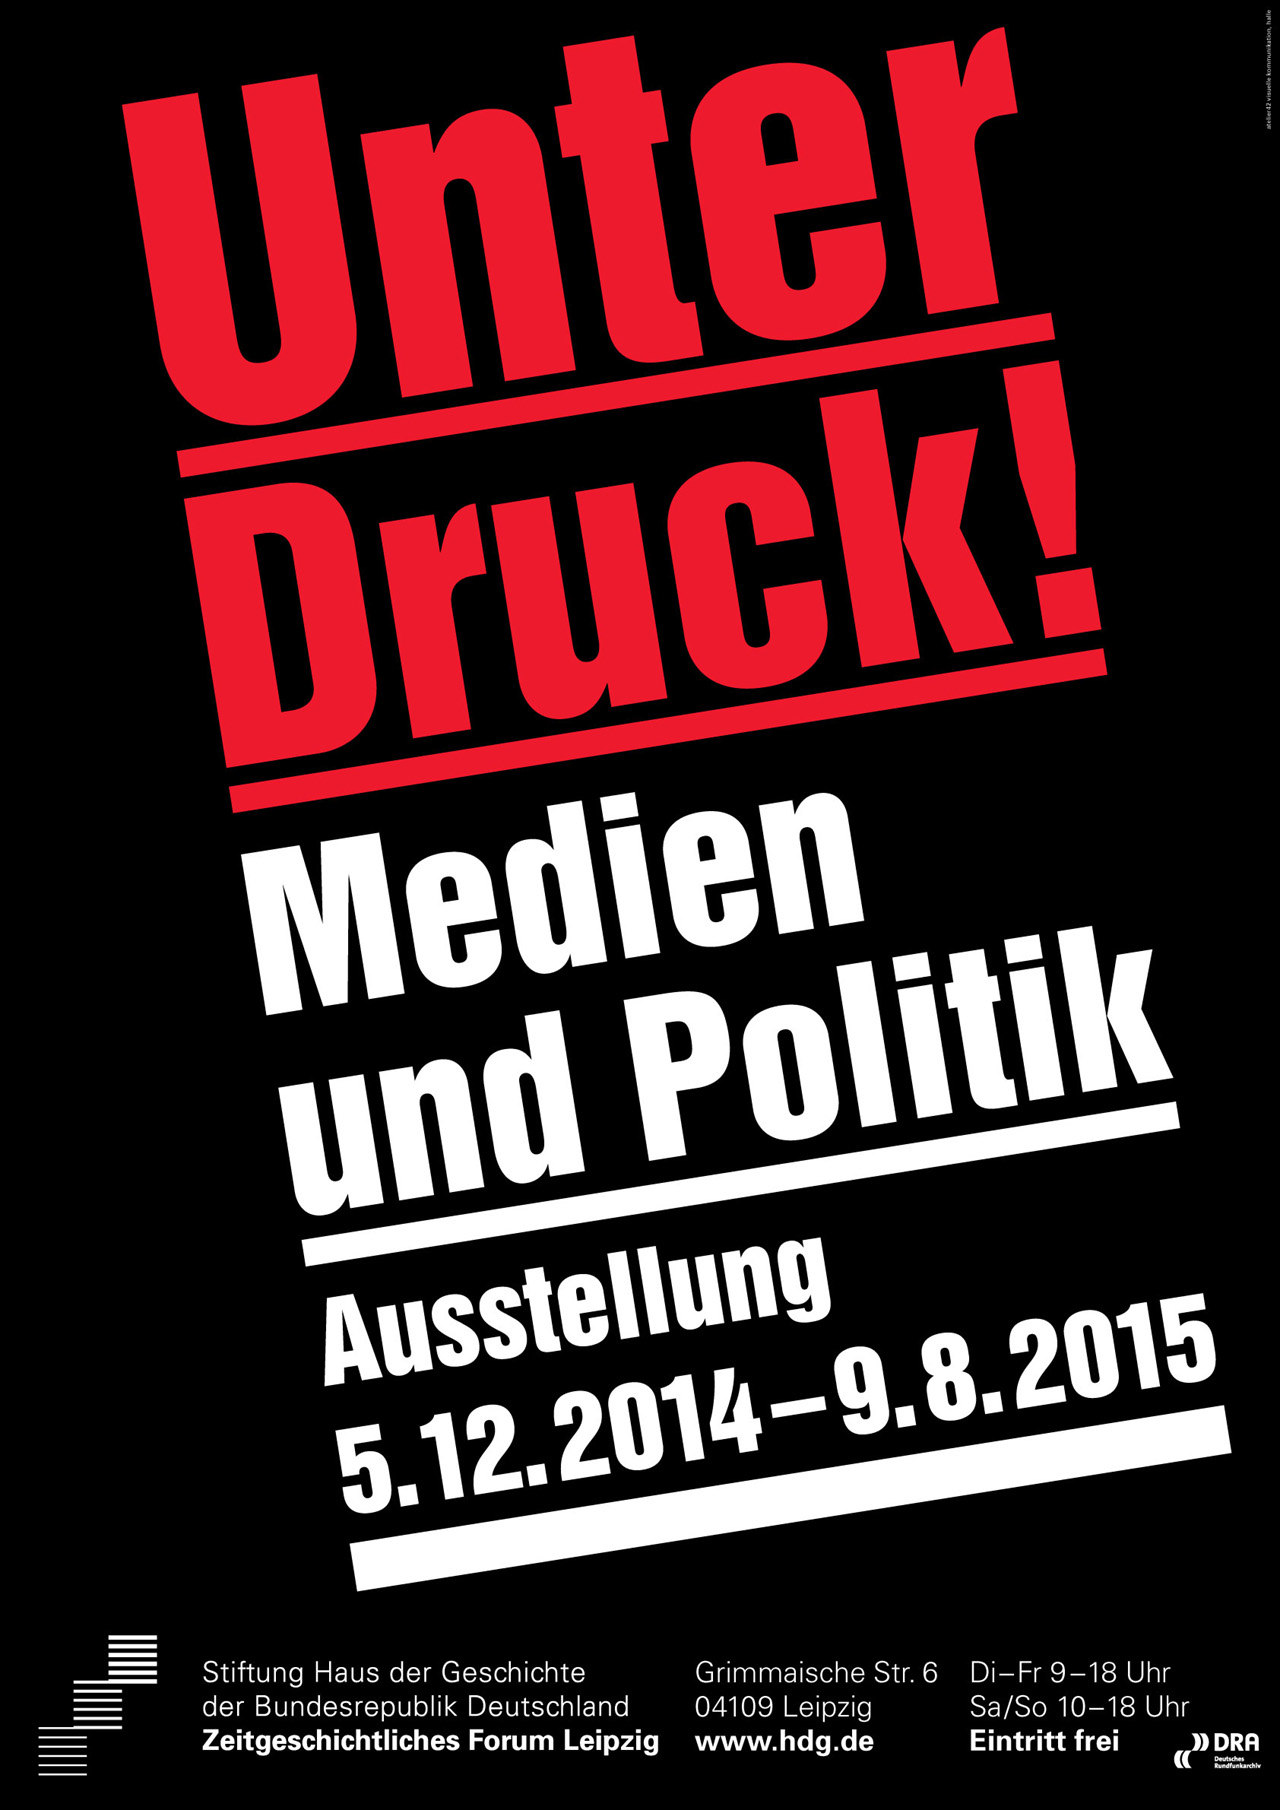 Ausstellungsplakat Unter Druck! Medien und Politik